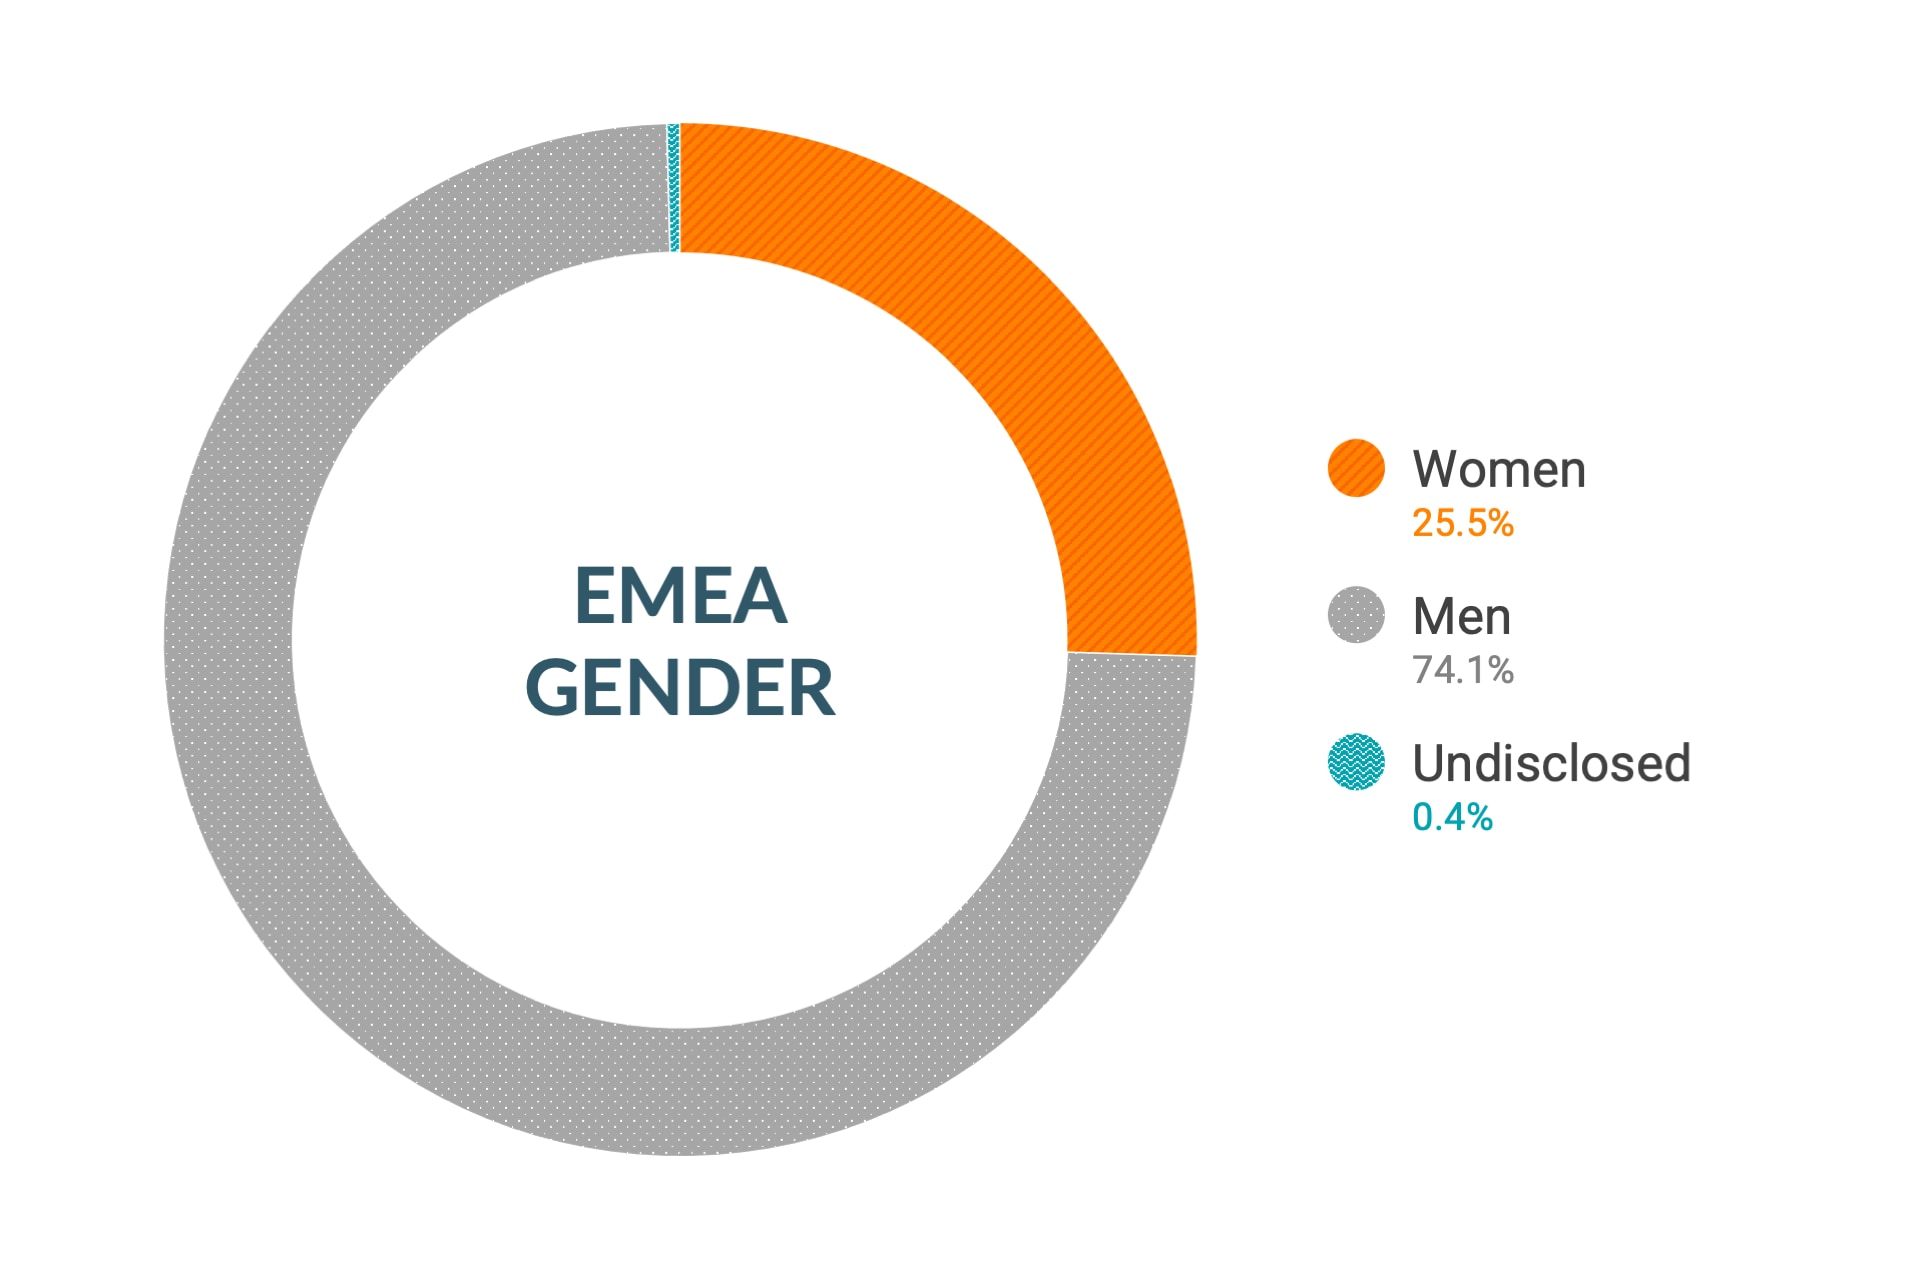 Dane firmy Cloudera dotyczące różnorodności i inkluzywności w kontekście płci w regionie EMEA: kobiety 25,7%, mężczyźni 73,9%, nie ujawniono 0,4%